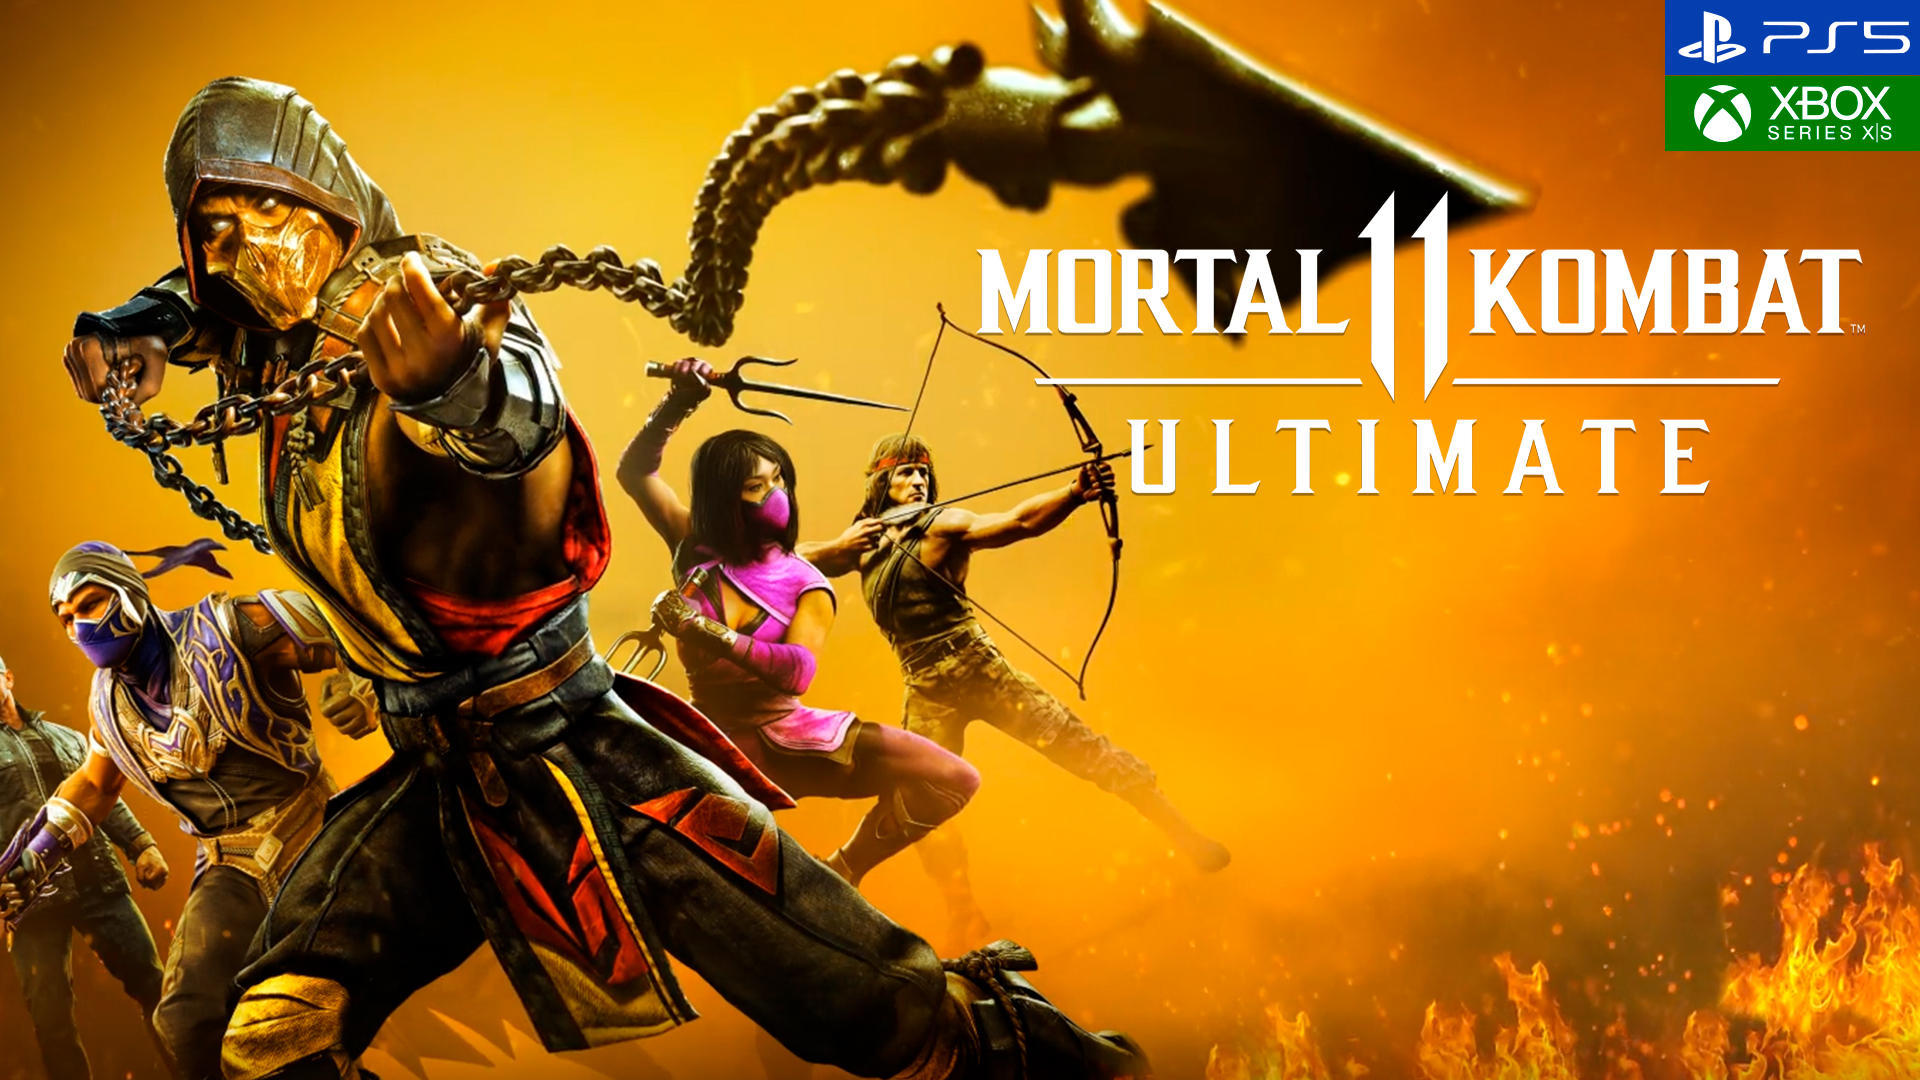 obispo idioma Provisional Análisis Mortal Kombat 11 Ultimate, la lucha más sangrienta debuta en la  nueva generación